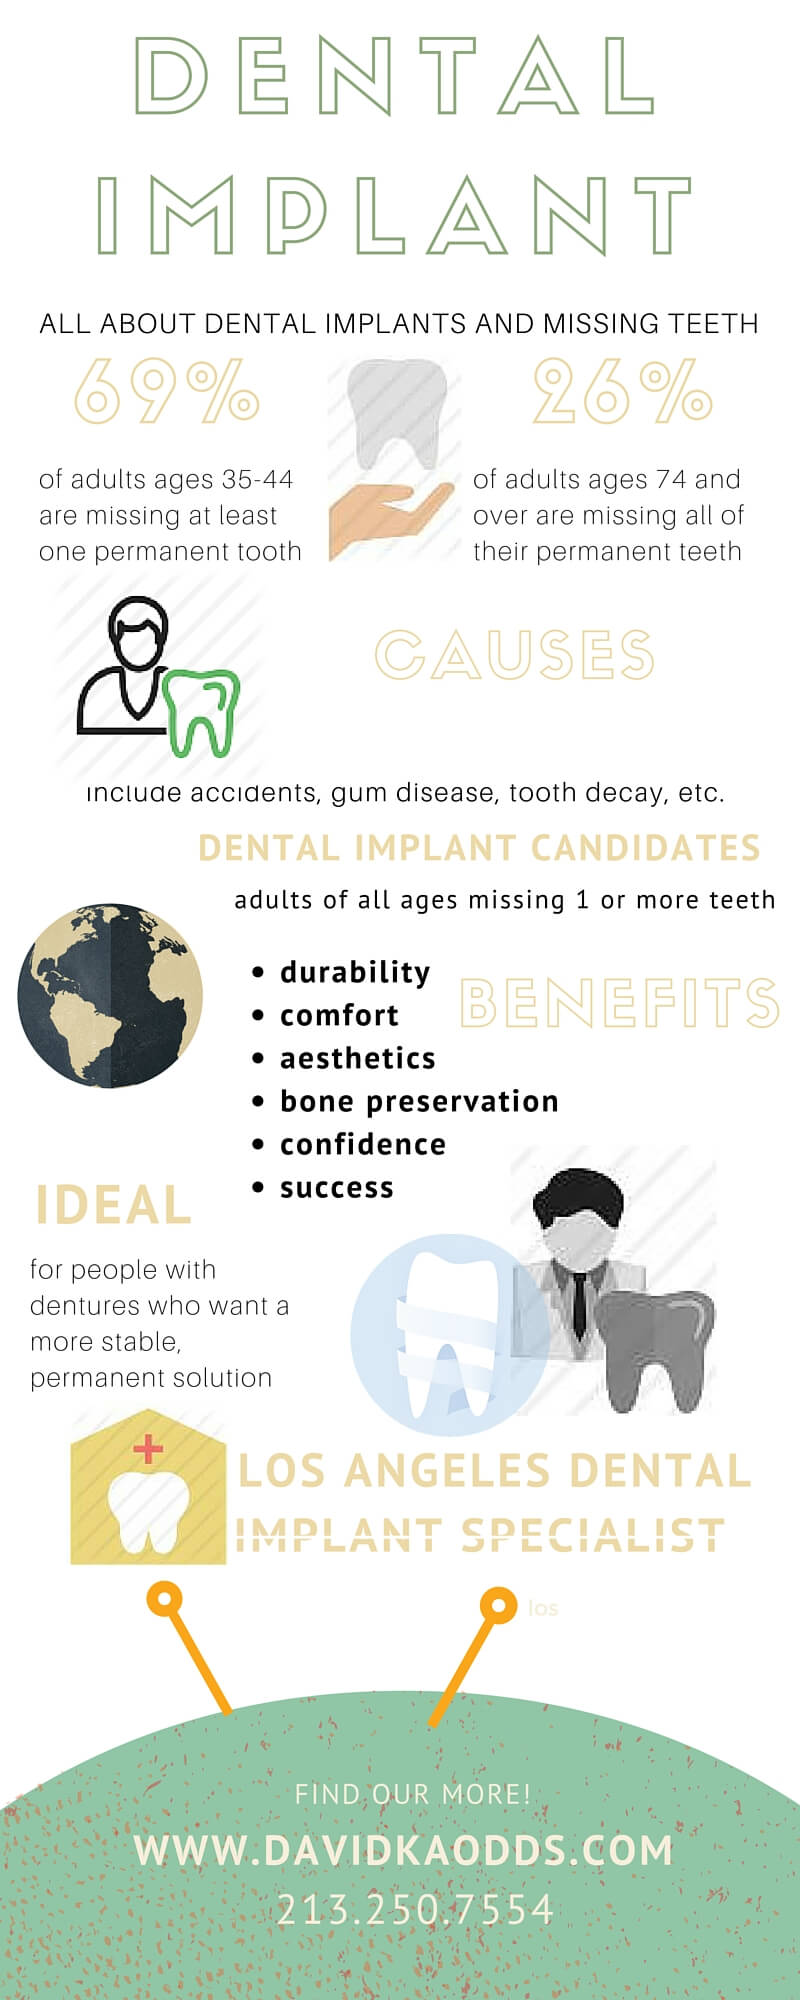 dental implant information